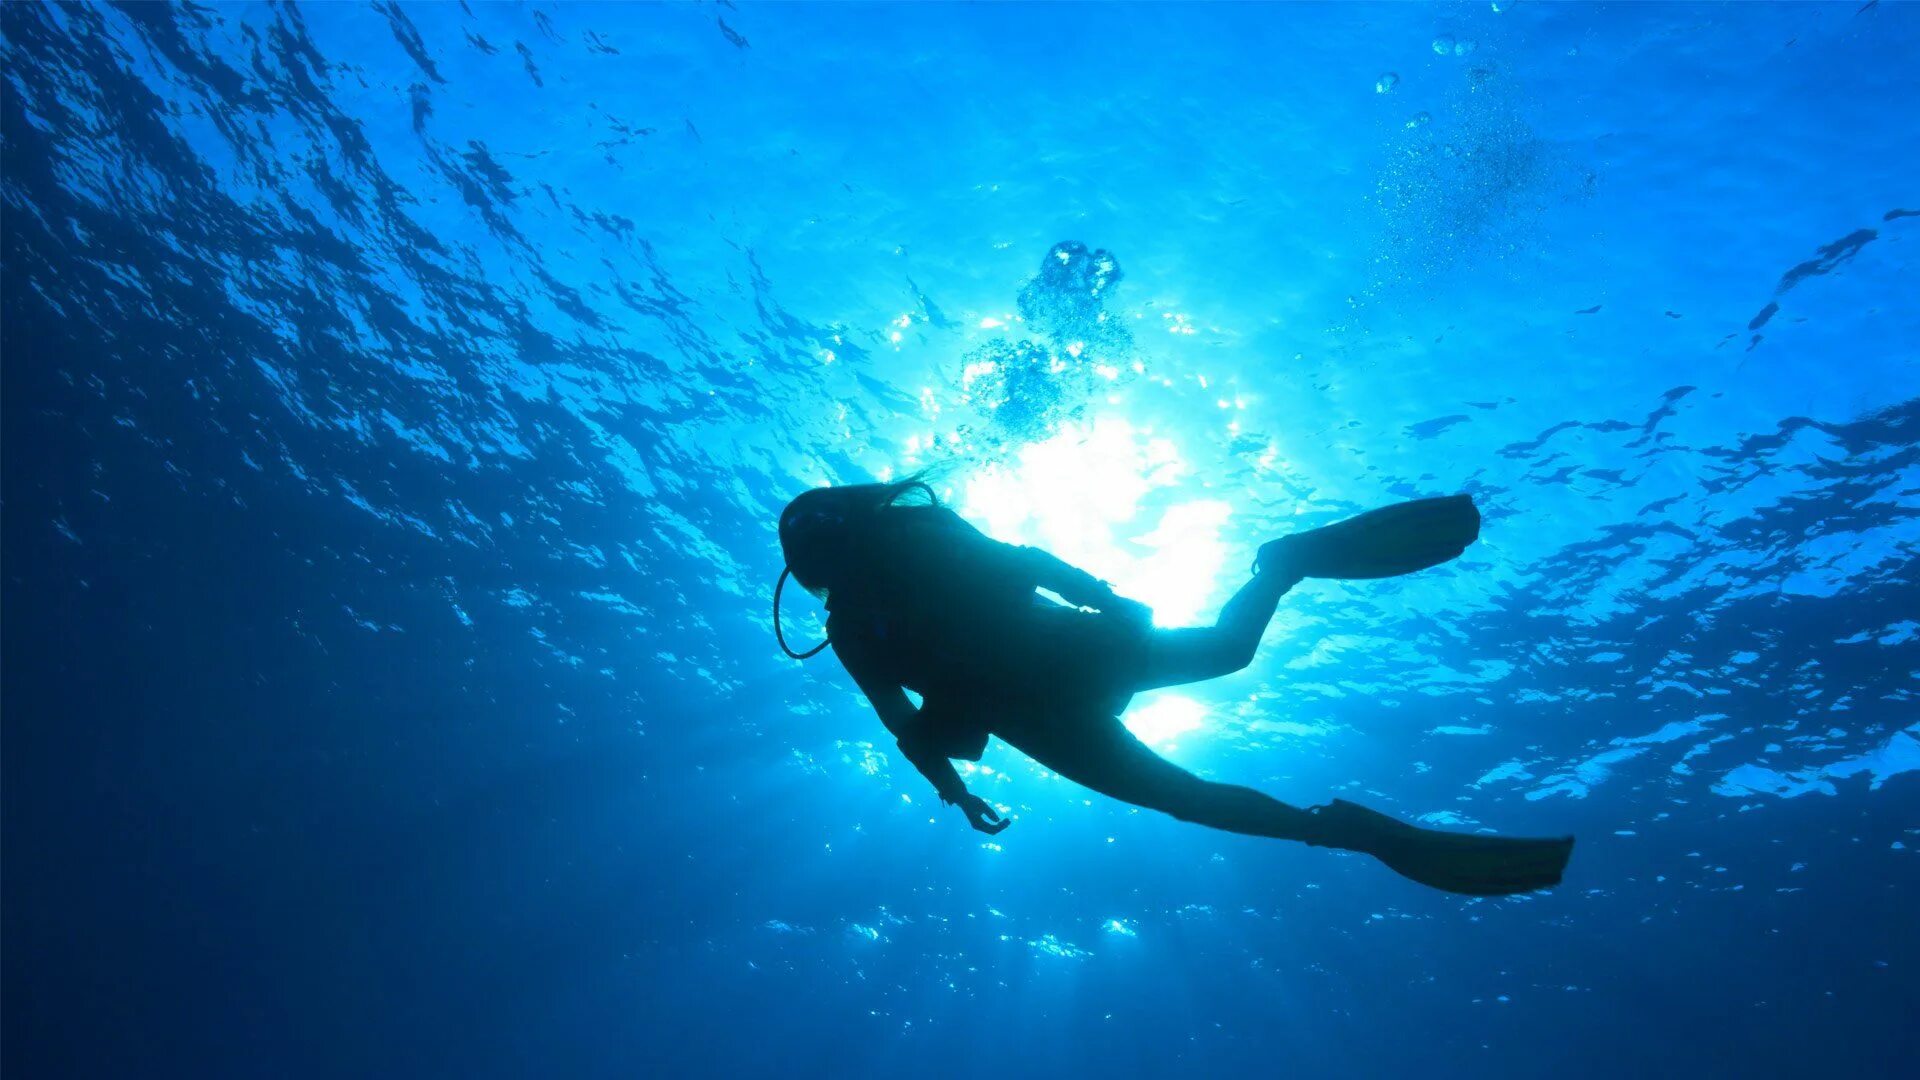 Sea dive. Скуба дайвинг. Погружение под воду. Подводное плавание. Человек в акваланге.